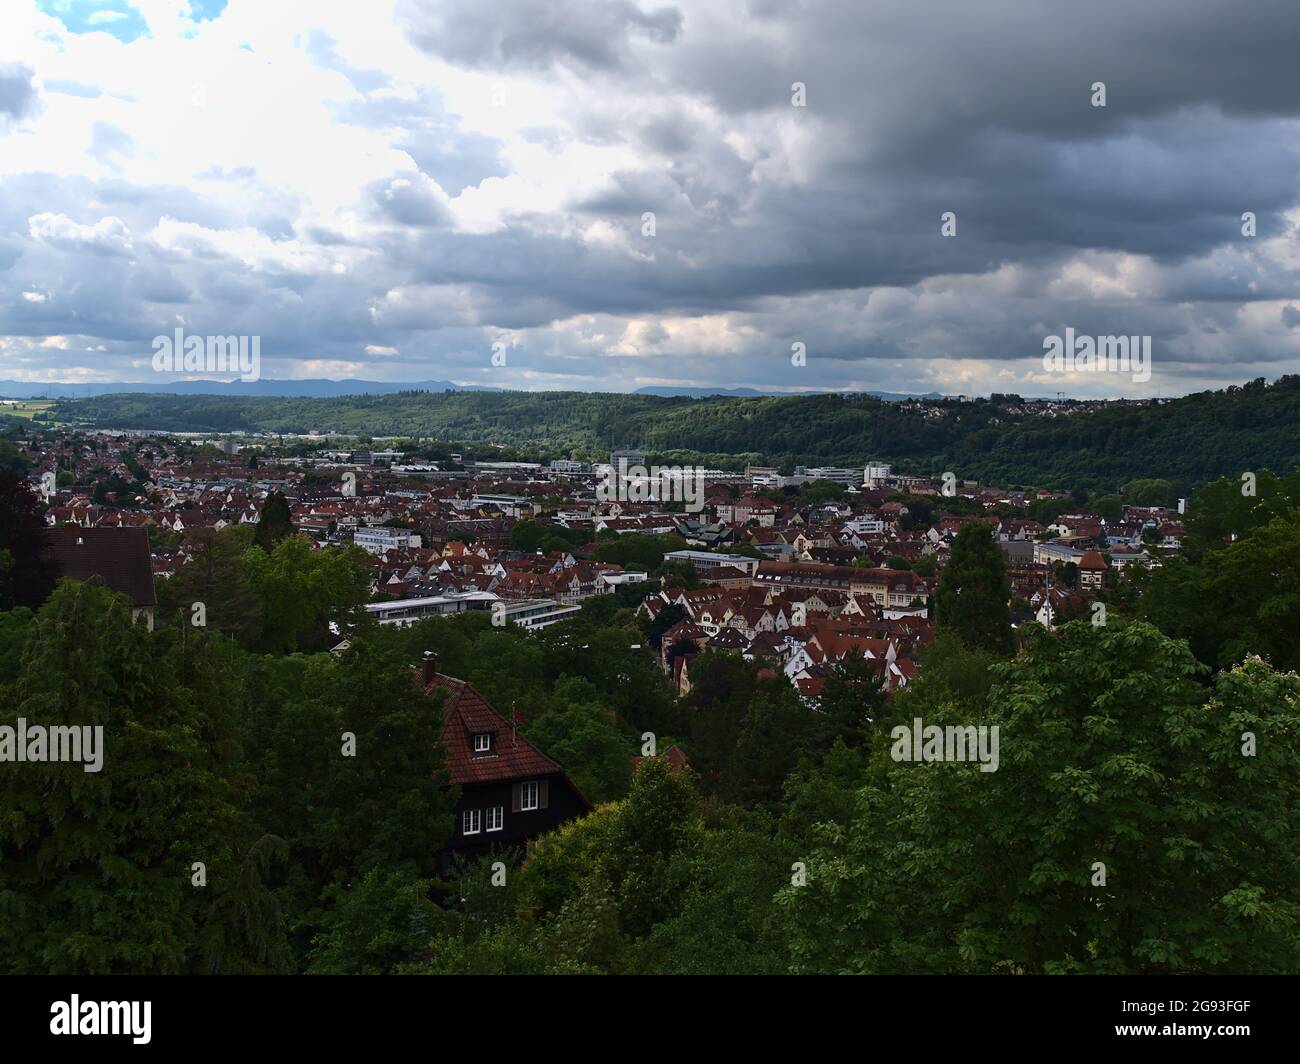 Belle vue panoramique sur la partie orientale de la ville Esslingen em Neckar, Bade-Wurtemberg, Allemagne situé dans une vallée entourée de forêts. Banque D'Images